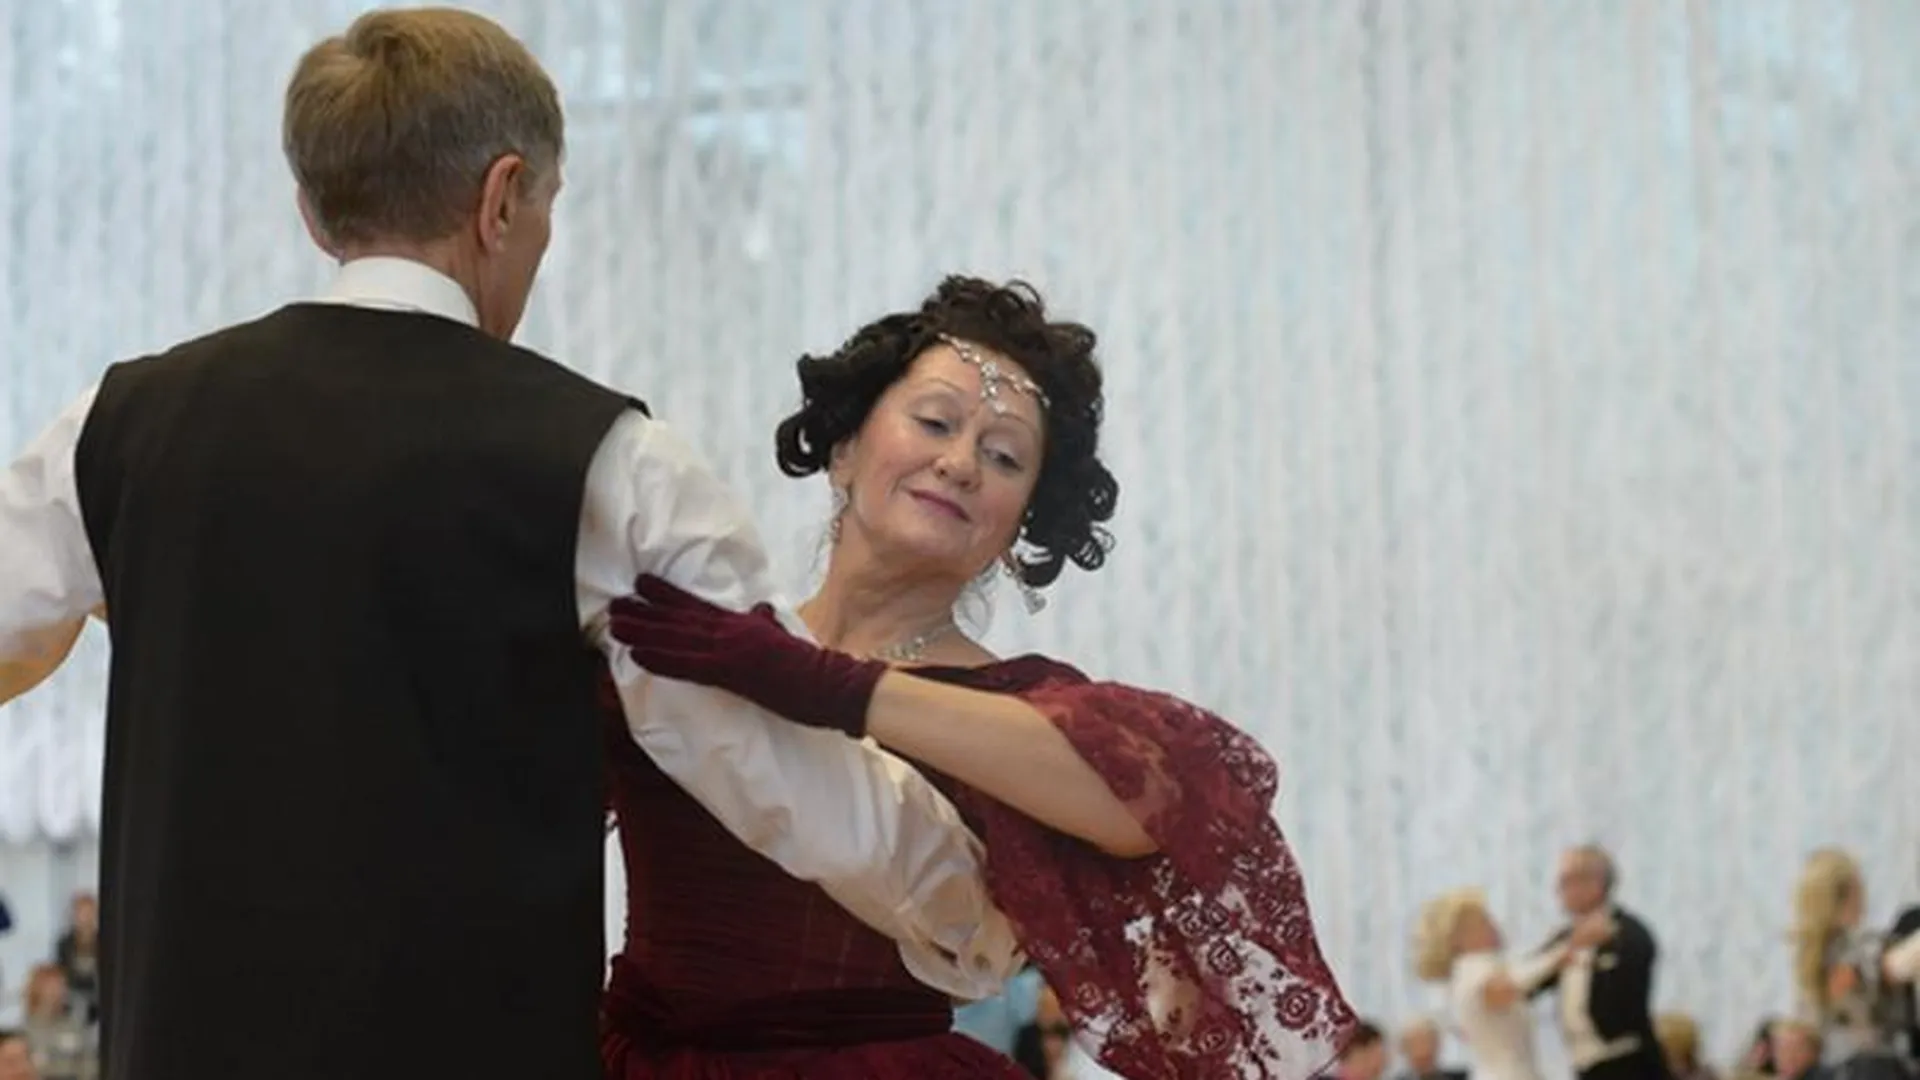 Пары почтенного возраста посоревнуются в танцах в Серпухове